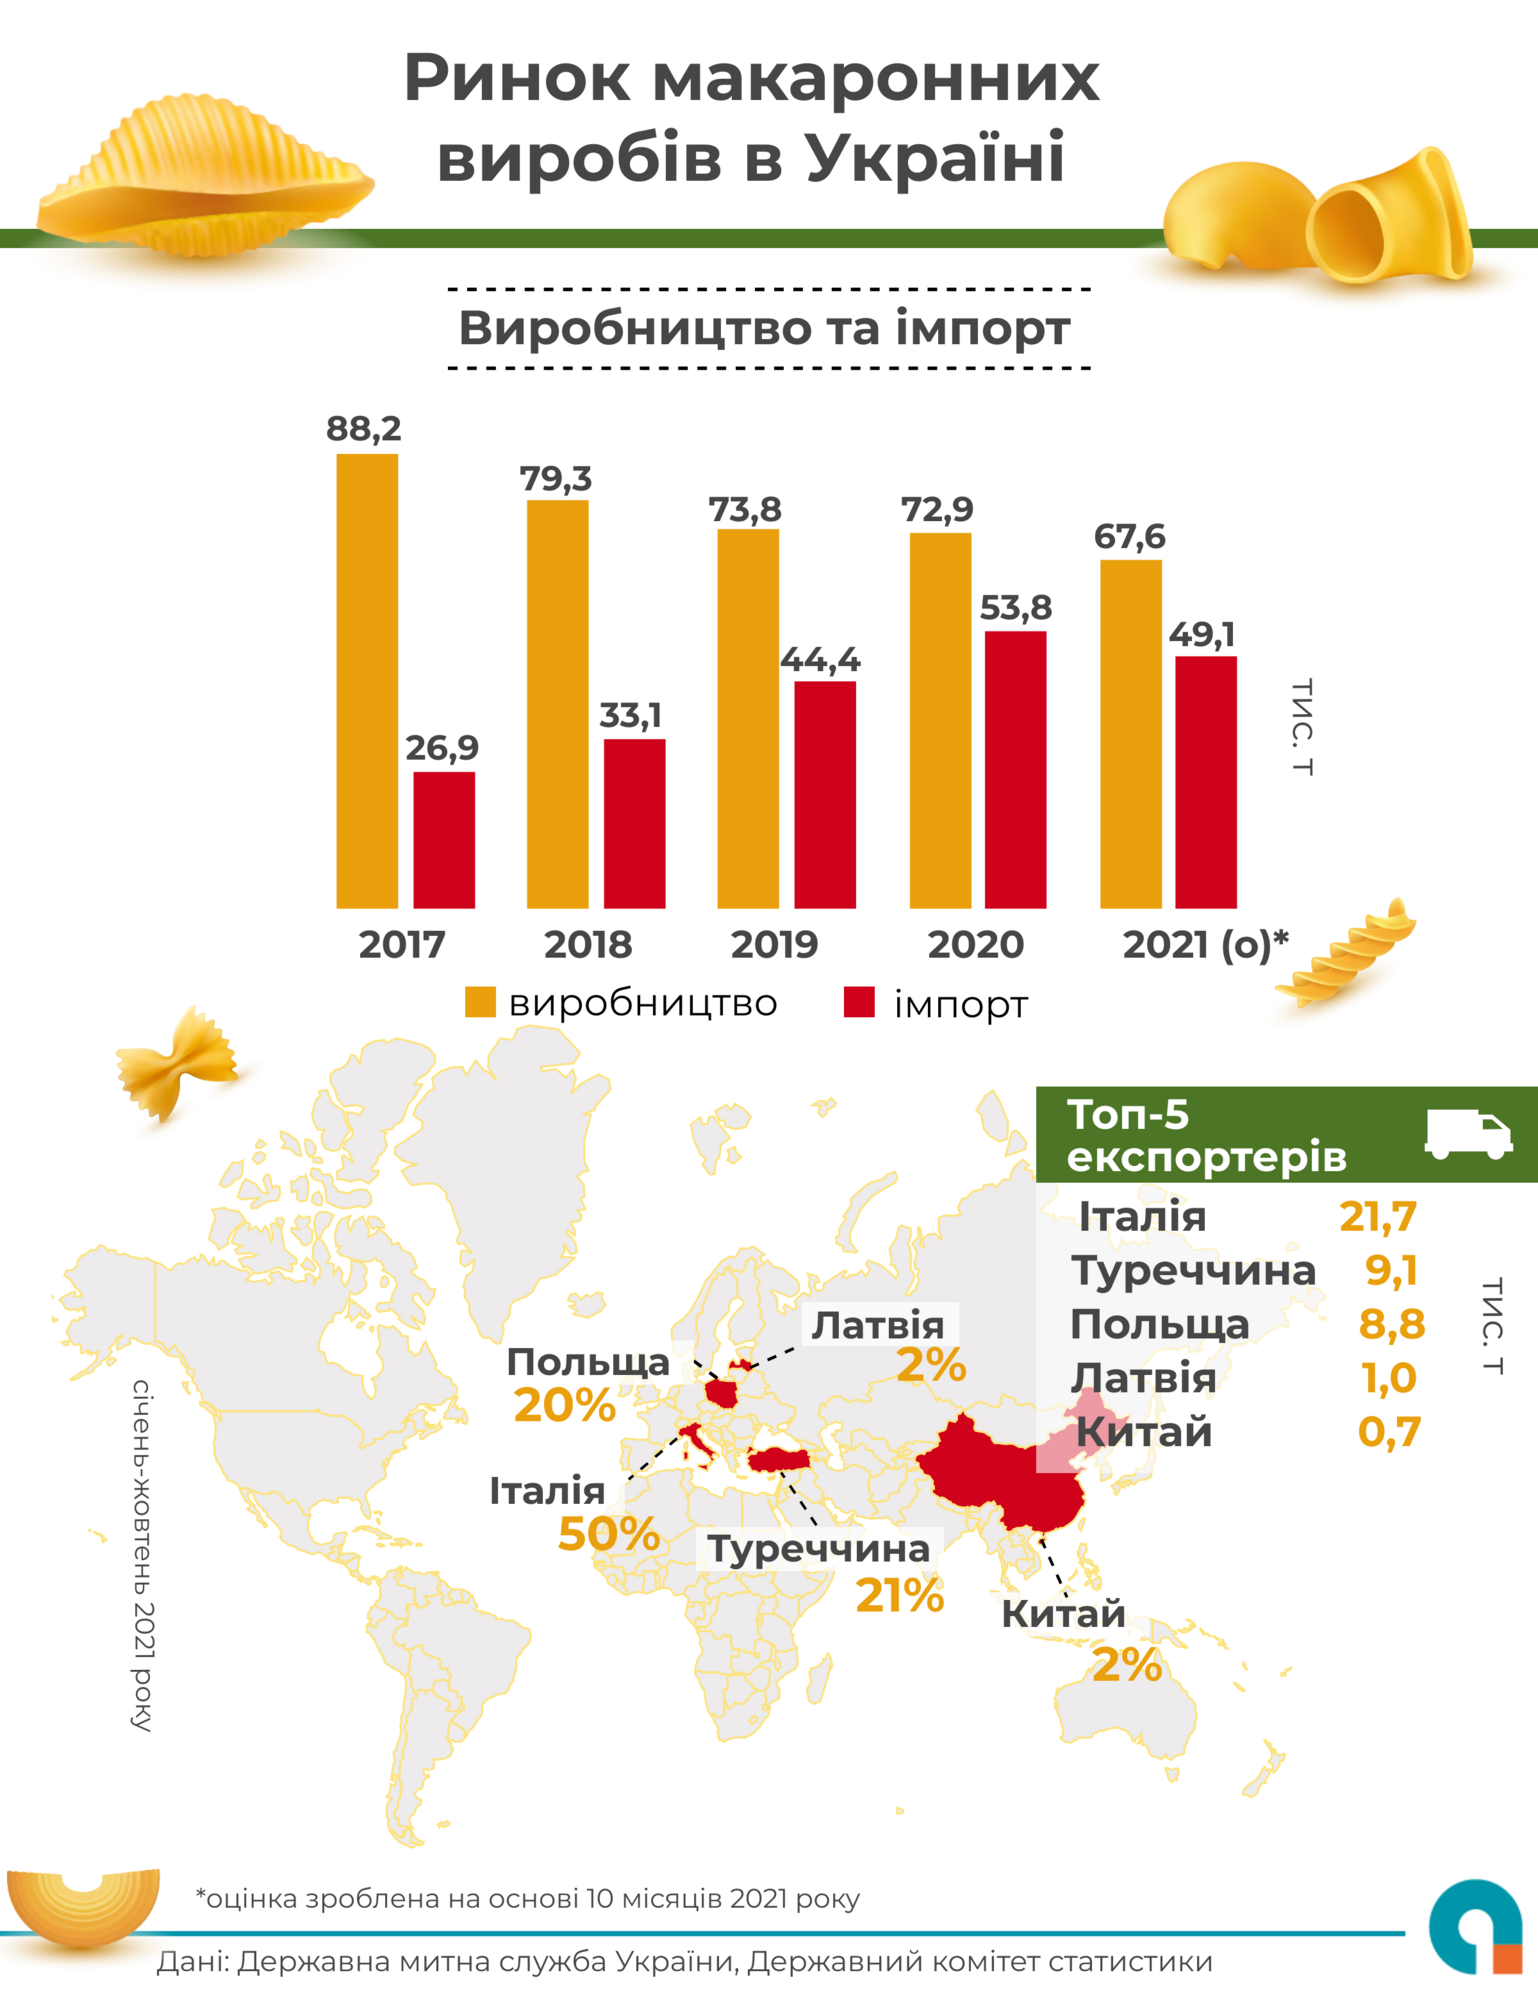 Как менялся рынок макаронных изделий в Украине за последние 5 лет